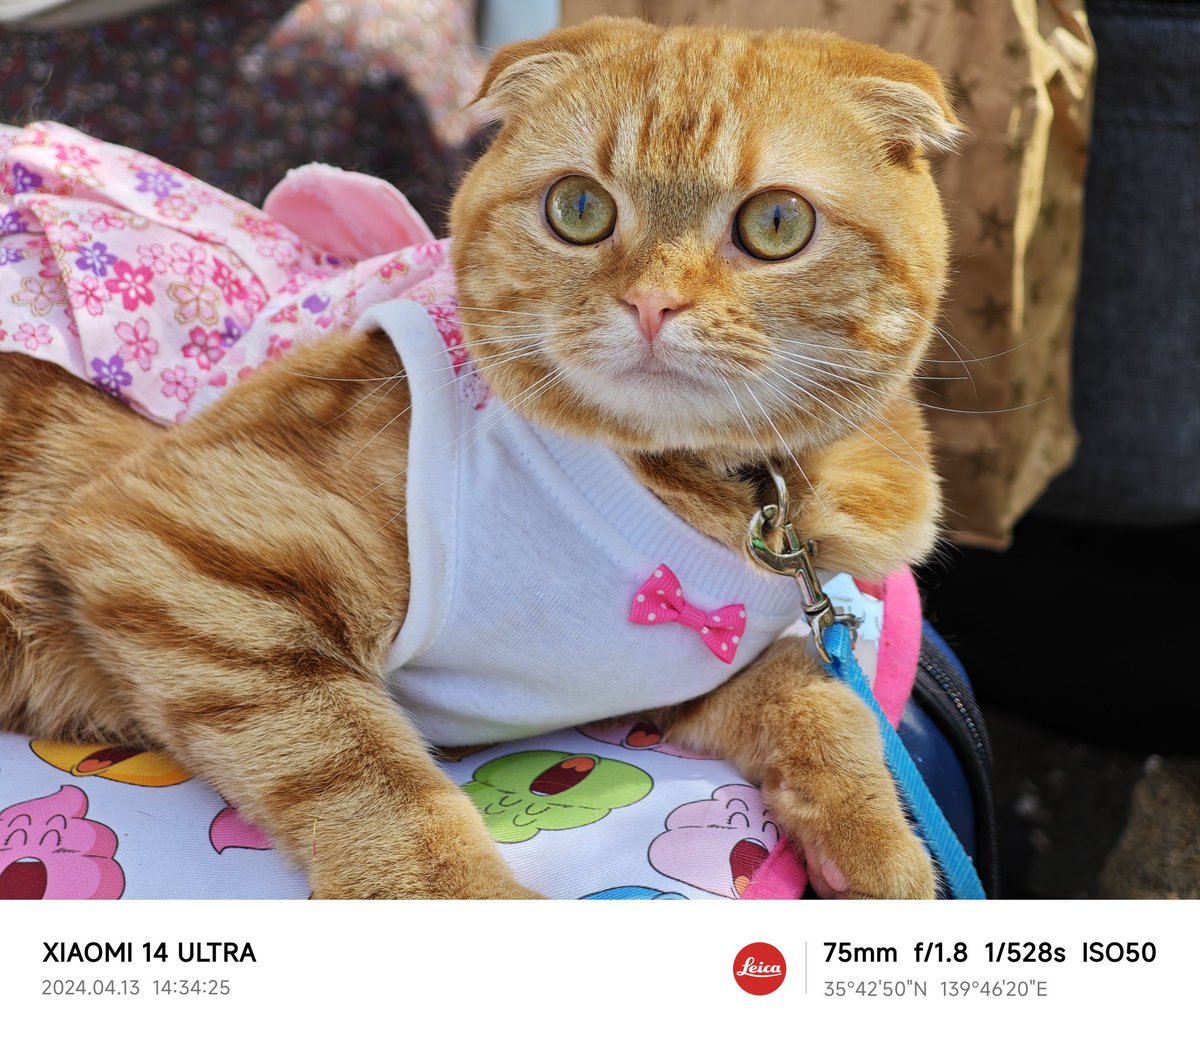 外にお出かけ中の猫ちゃん、カメラに目線合わせてくれる猫ちゃん、😺
本当に素晴らしい😻
可愛く、大人しく、マジで癒される
#Xiaomi14Ultra